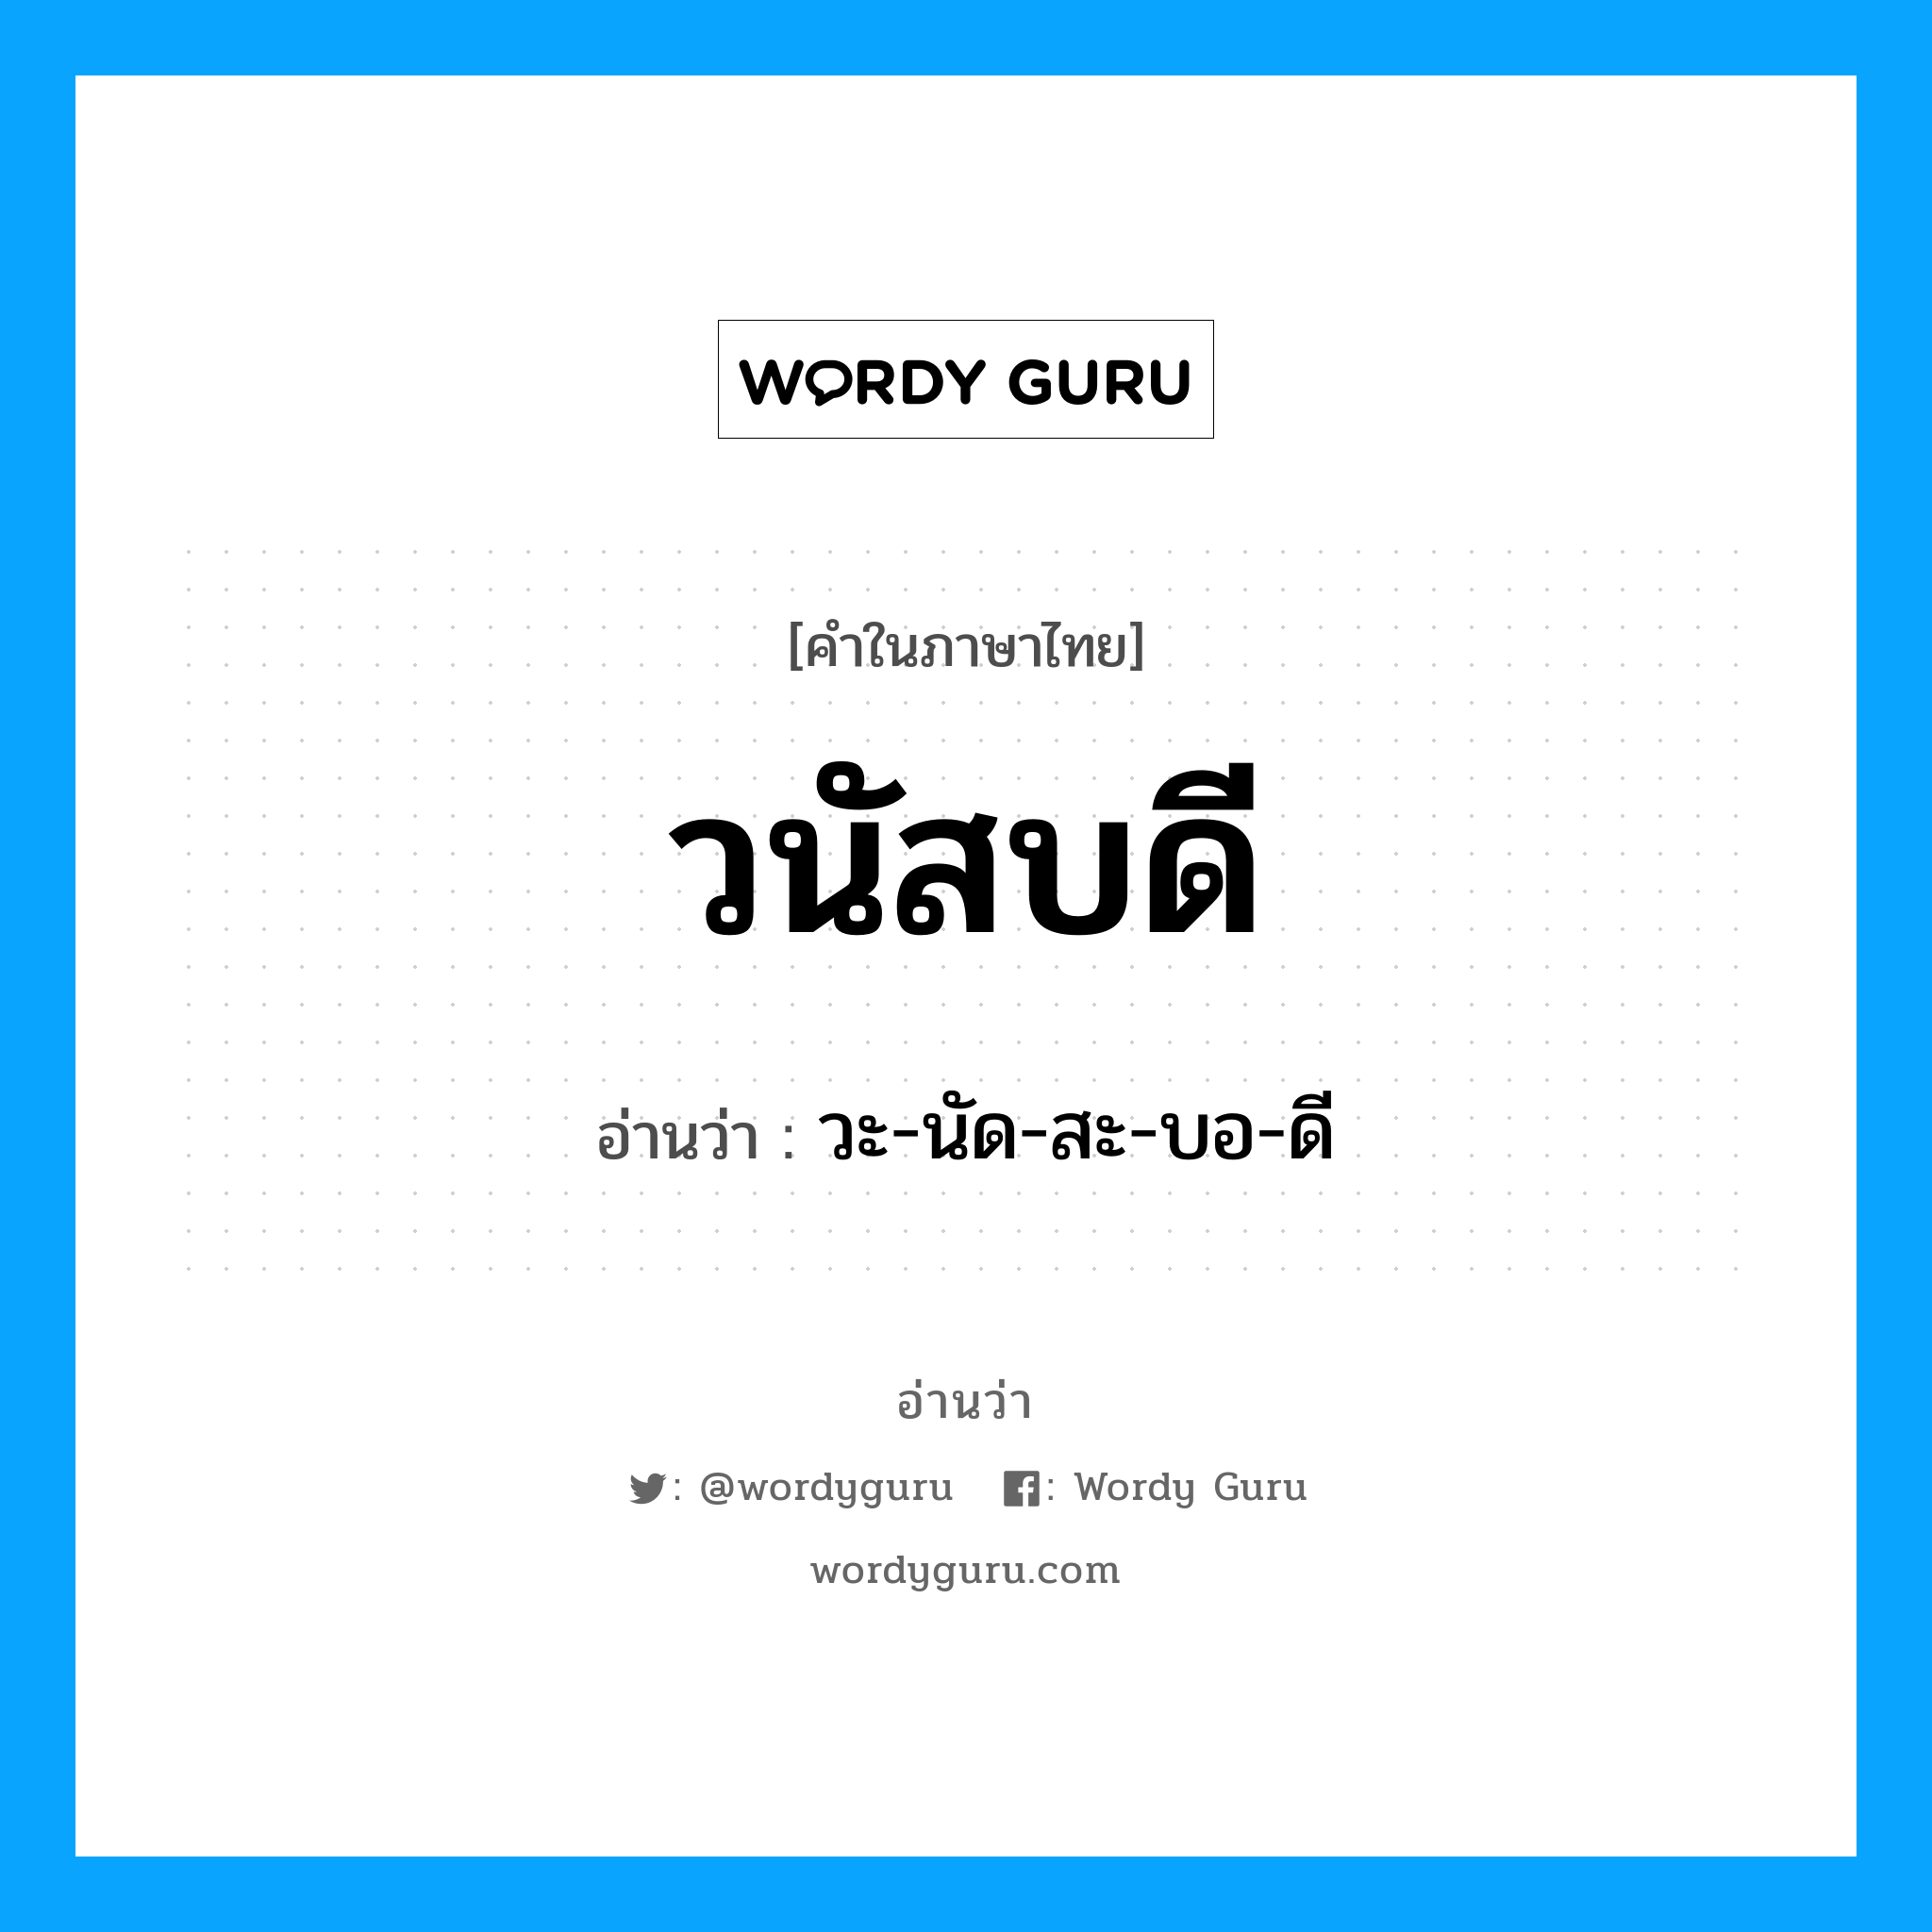 วะ-นัด-สะ-บอ-ดี เป็นคำอ่านของคำไหน?, คำในภาษาไทย วะ-นัด-สะ-บอ-ดี อ่านว่า วนัสบดี